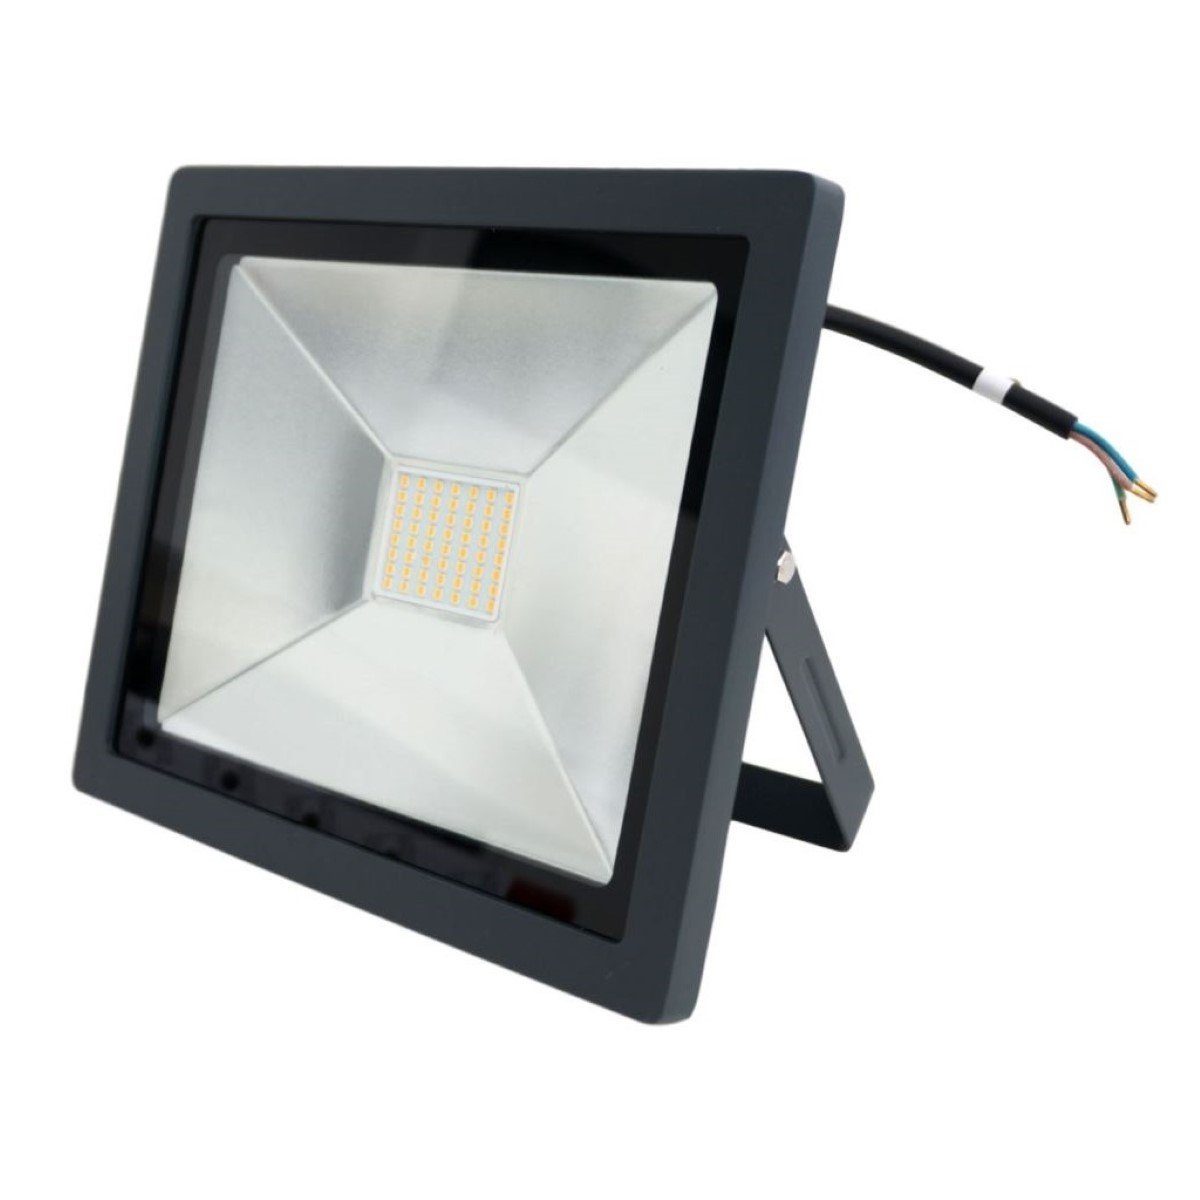 Patona LED Außen-Wandleuchte LED-Lampe 50W Fluter Außen-Strahler Anthrazit,  Leuchte mit IP65, Scheinwerfer Flutlicht 50W entspricht etwa 350W,  angenehmes warmweißes Licht mit 4000 lm, Ideal für Innen und Außen